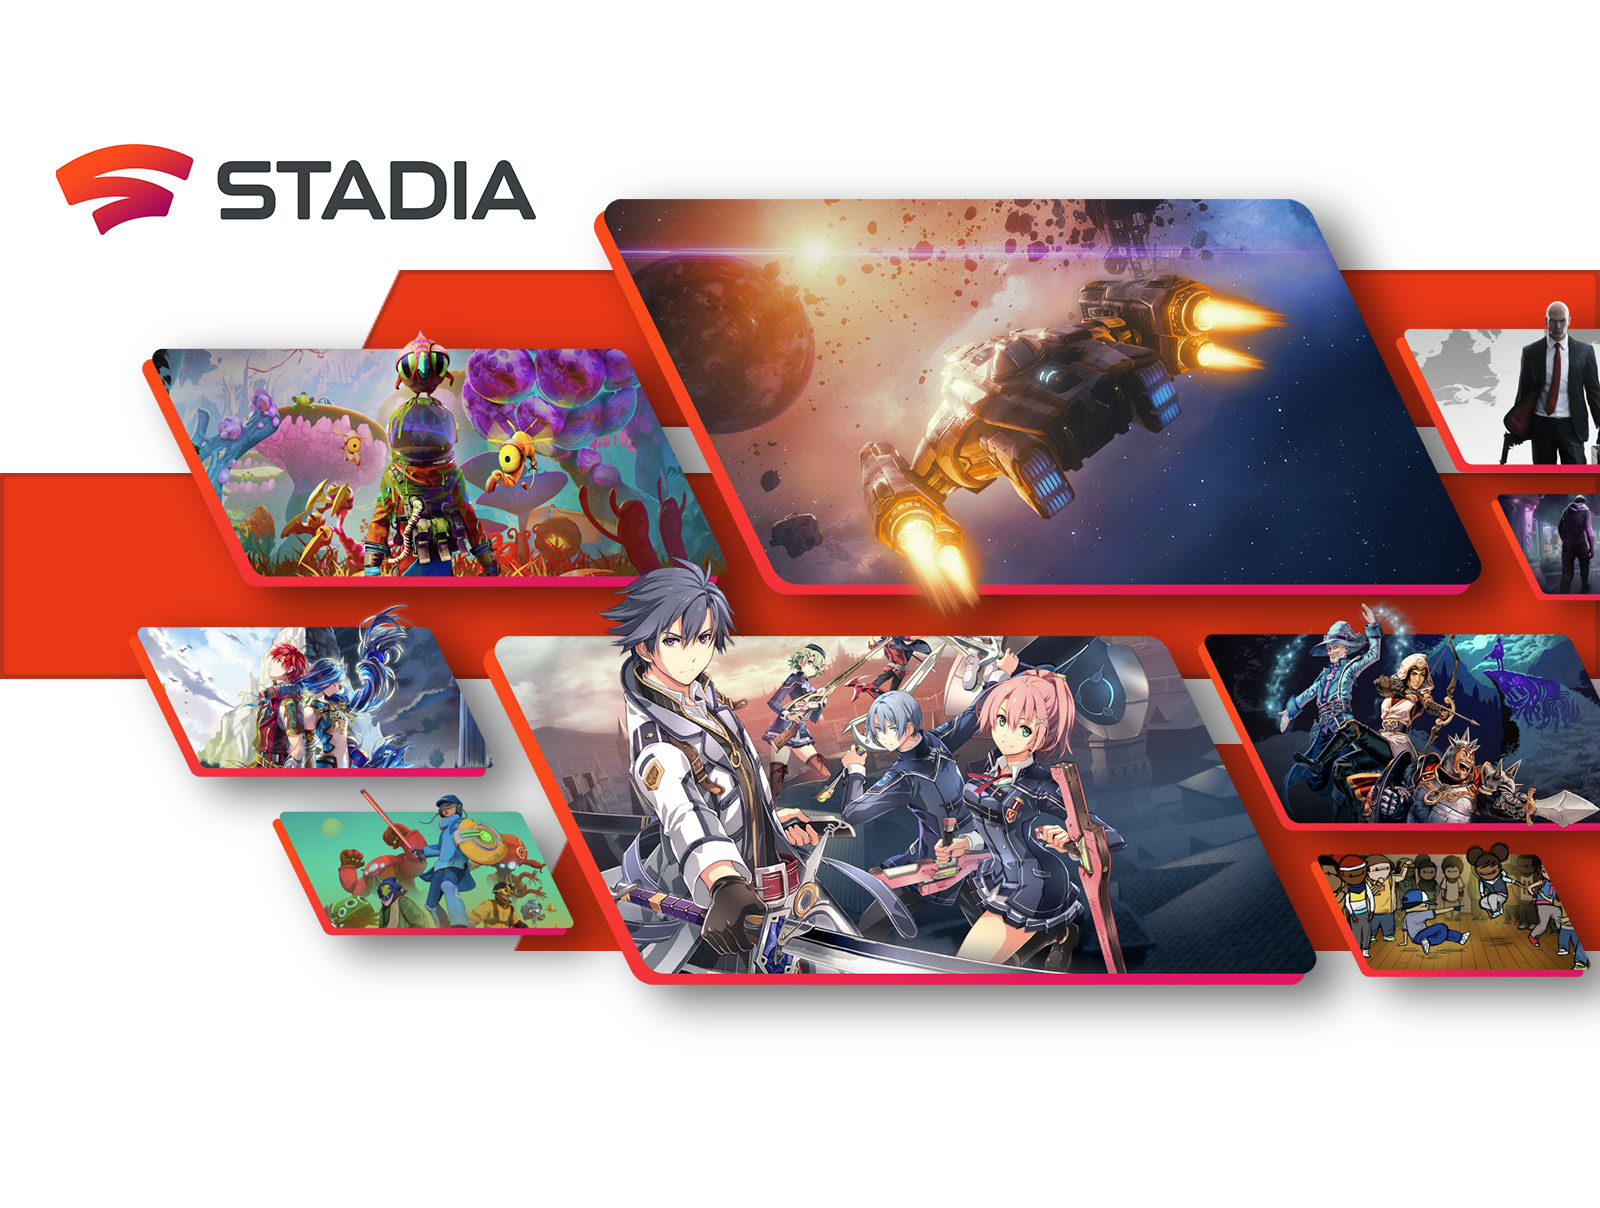 Slika prikazuje logotip STADIA ter prizore in like iz različnih iger.